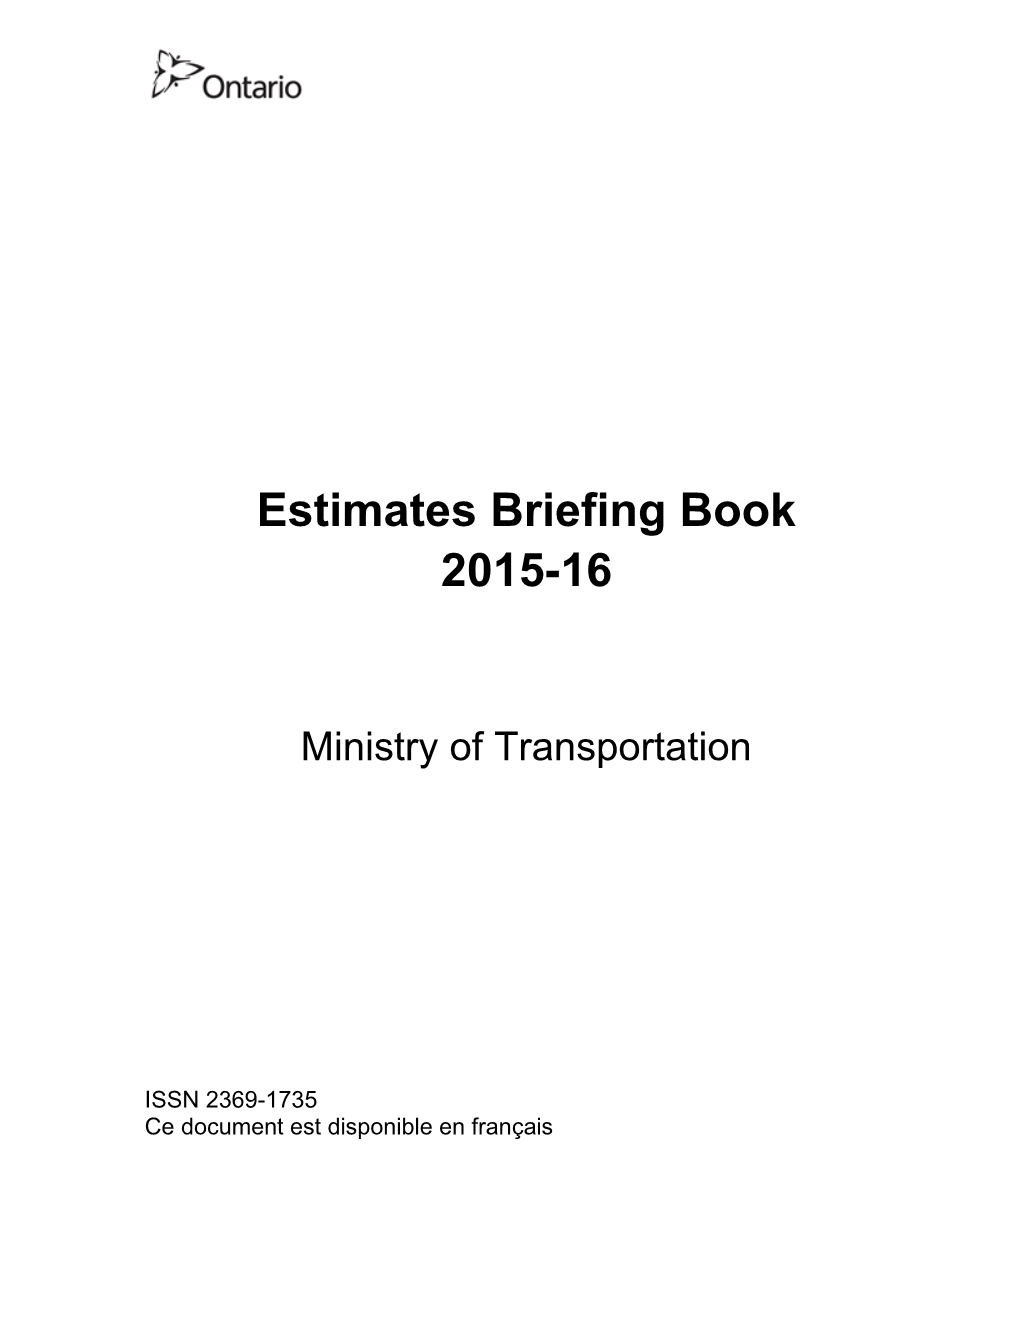 Download Estimates Briefing Book 2015-16